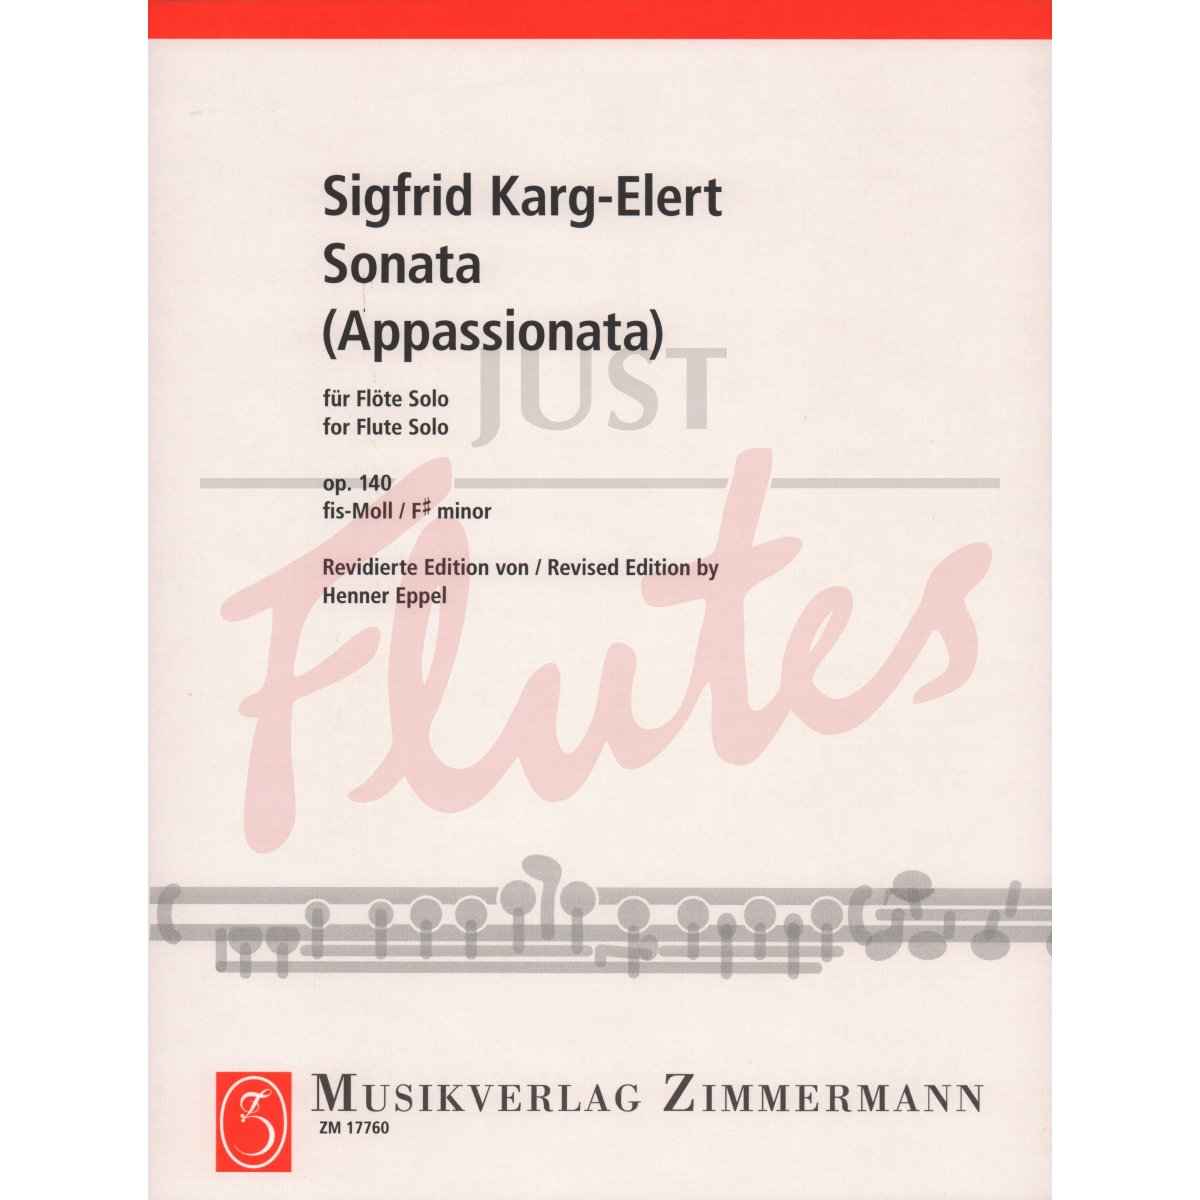 Sonata (Appassionata) in F# minor for Solo Flute